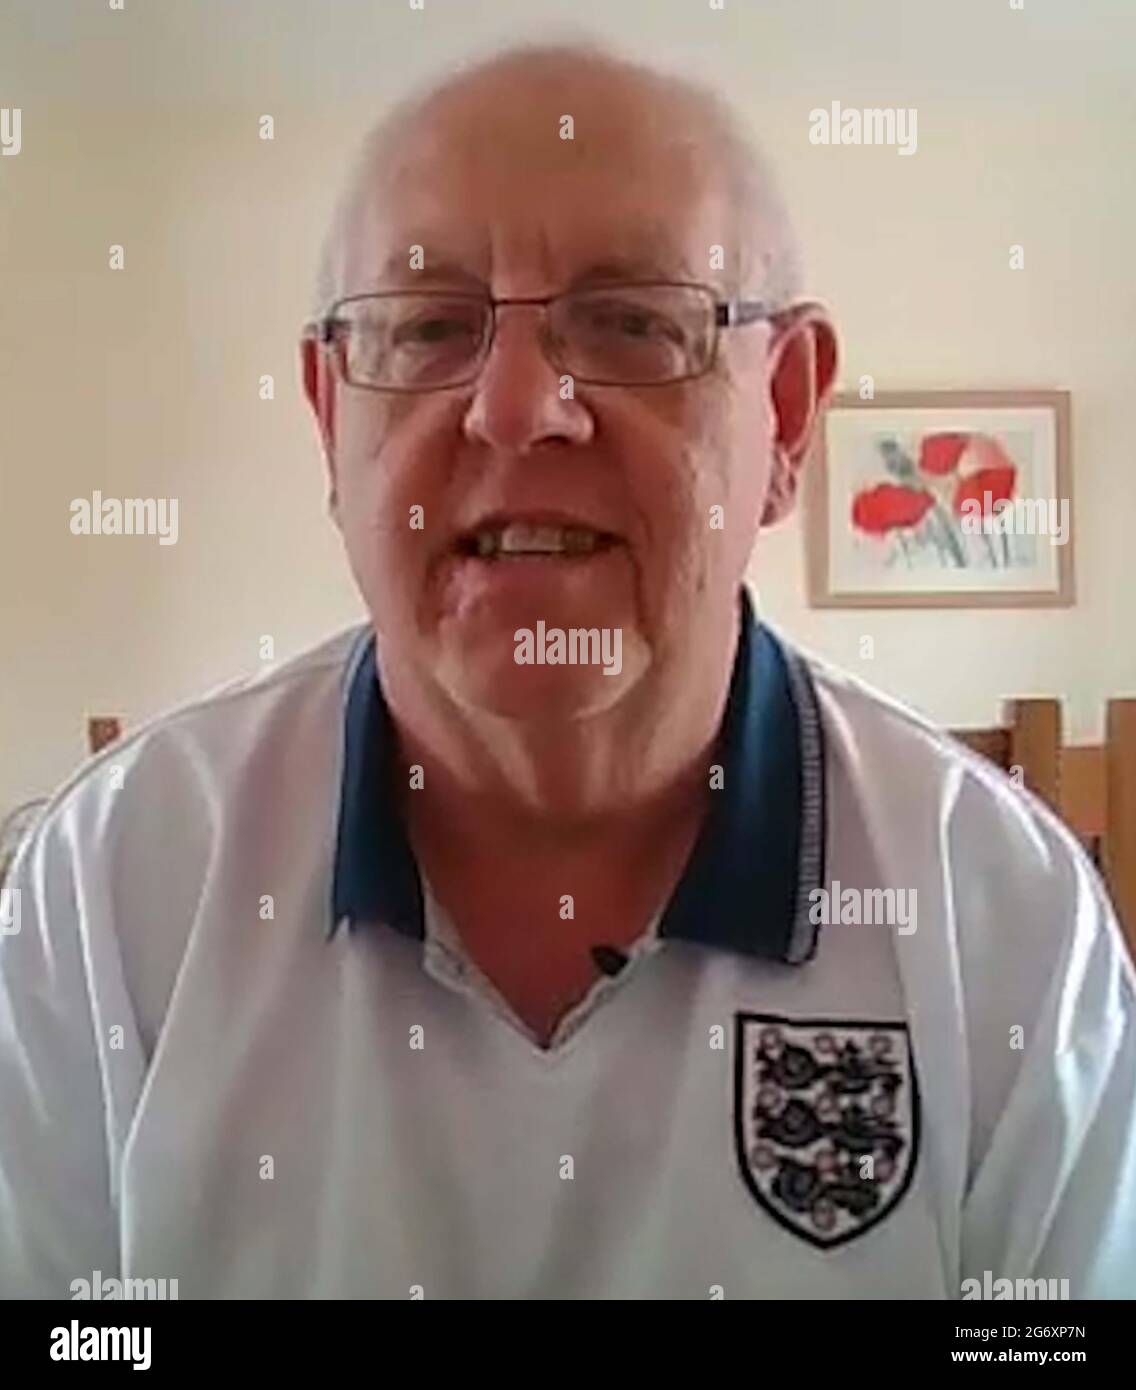 Screengrab tiré de PA Video de Tony Stopford, un fan de football de longue date qui a vu l'Angleterre lever la coupe du monde à Wembley en 1966, a déclaré qu'il se sent privilégiédî de travailler au stade dimanche. Date de la photo : vendredi 9 juillet 2021. Banque D'Images